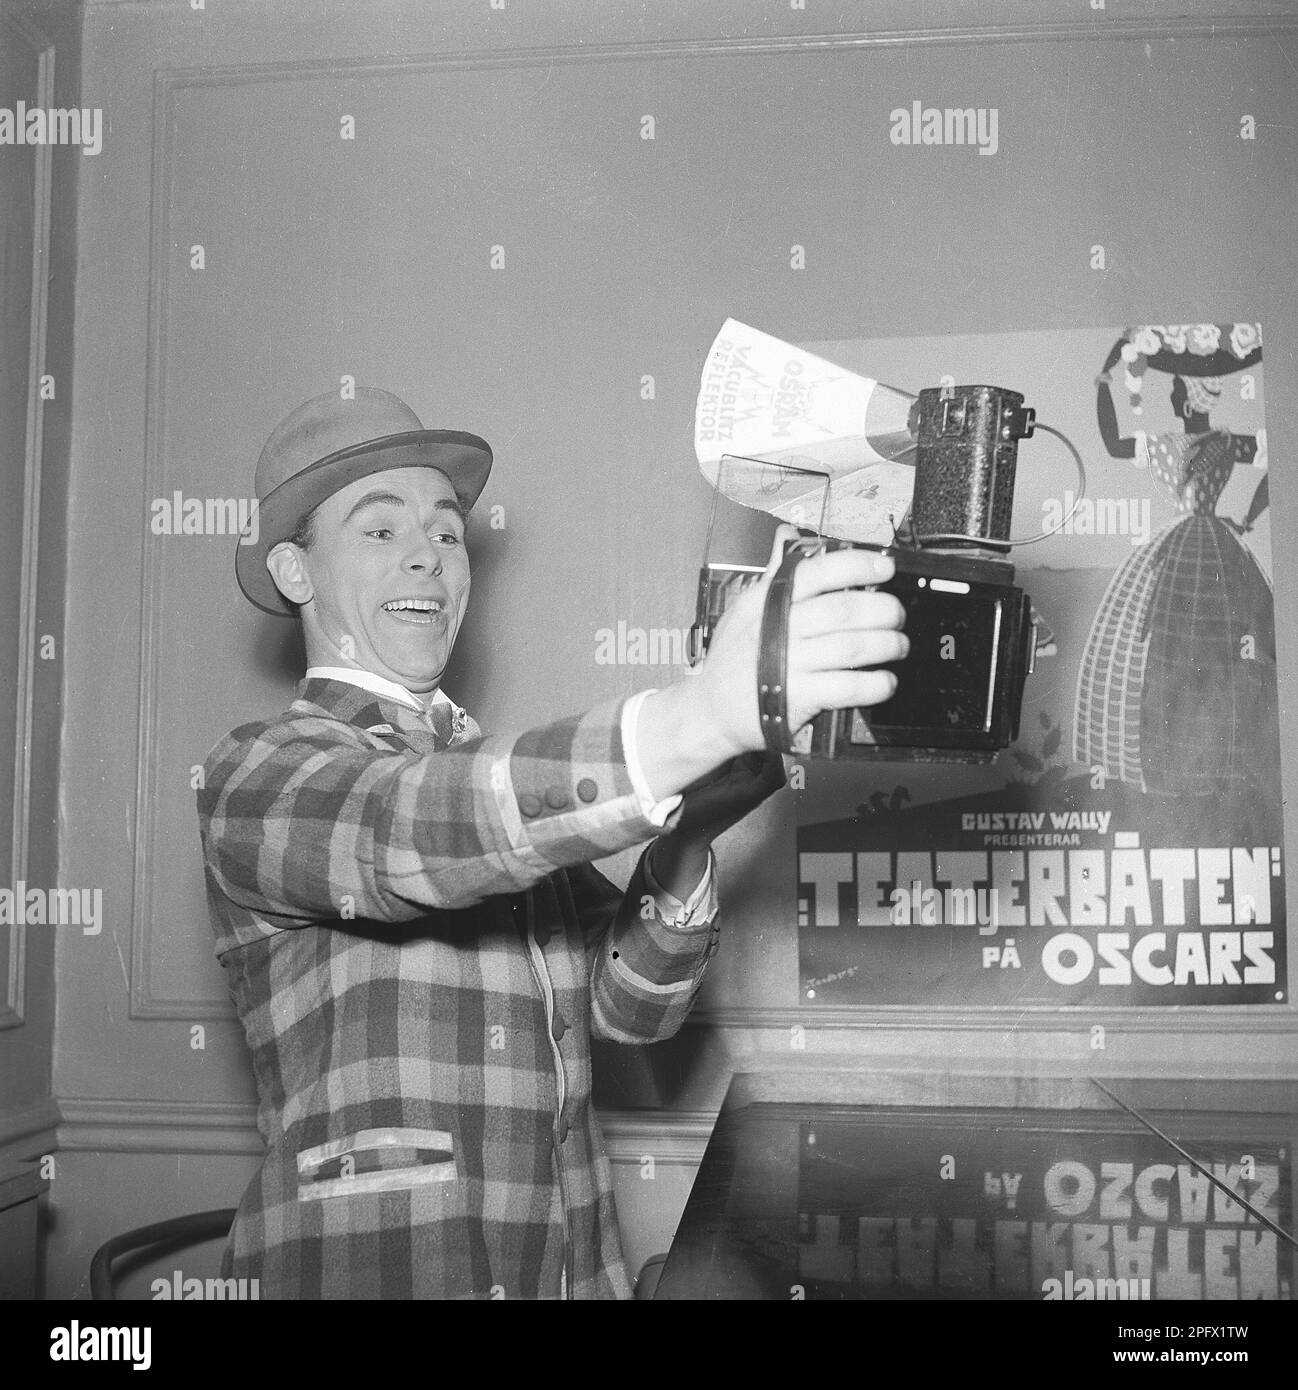 Nils Poppe, 1908-2000, schwedischer Schauspieler. Hier verewigt er sich, indem er eine Kamera in der Hand hält und sie auf sein glückliches Gesicht richtet. Ein visueller Beweis dafür, dass das moderne sogenannte Selfie nichts Neues ist. Schweden 1943 Kristoffersson Ref. C27-4 Stockfoto